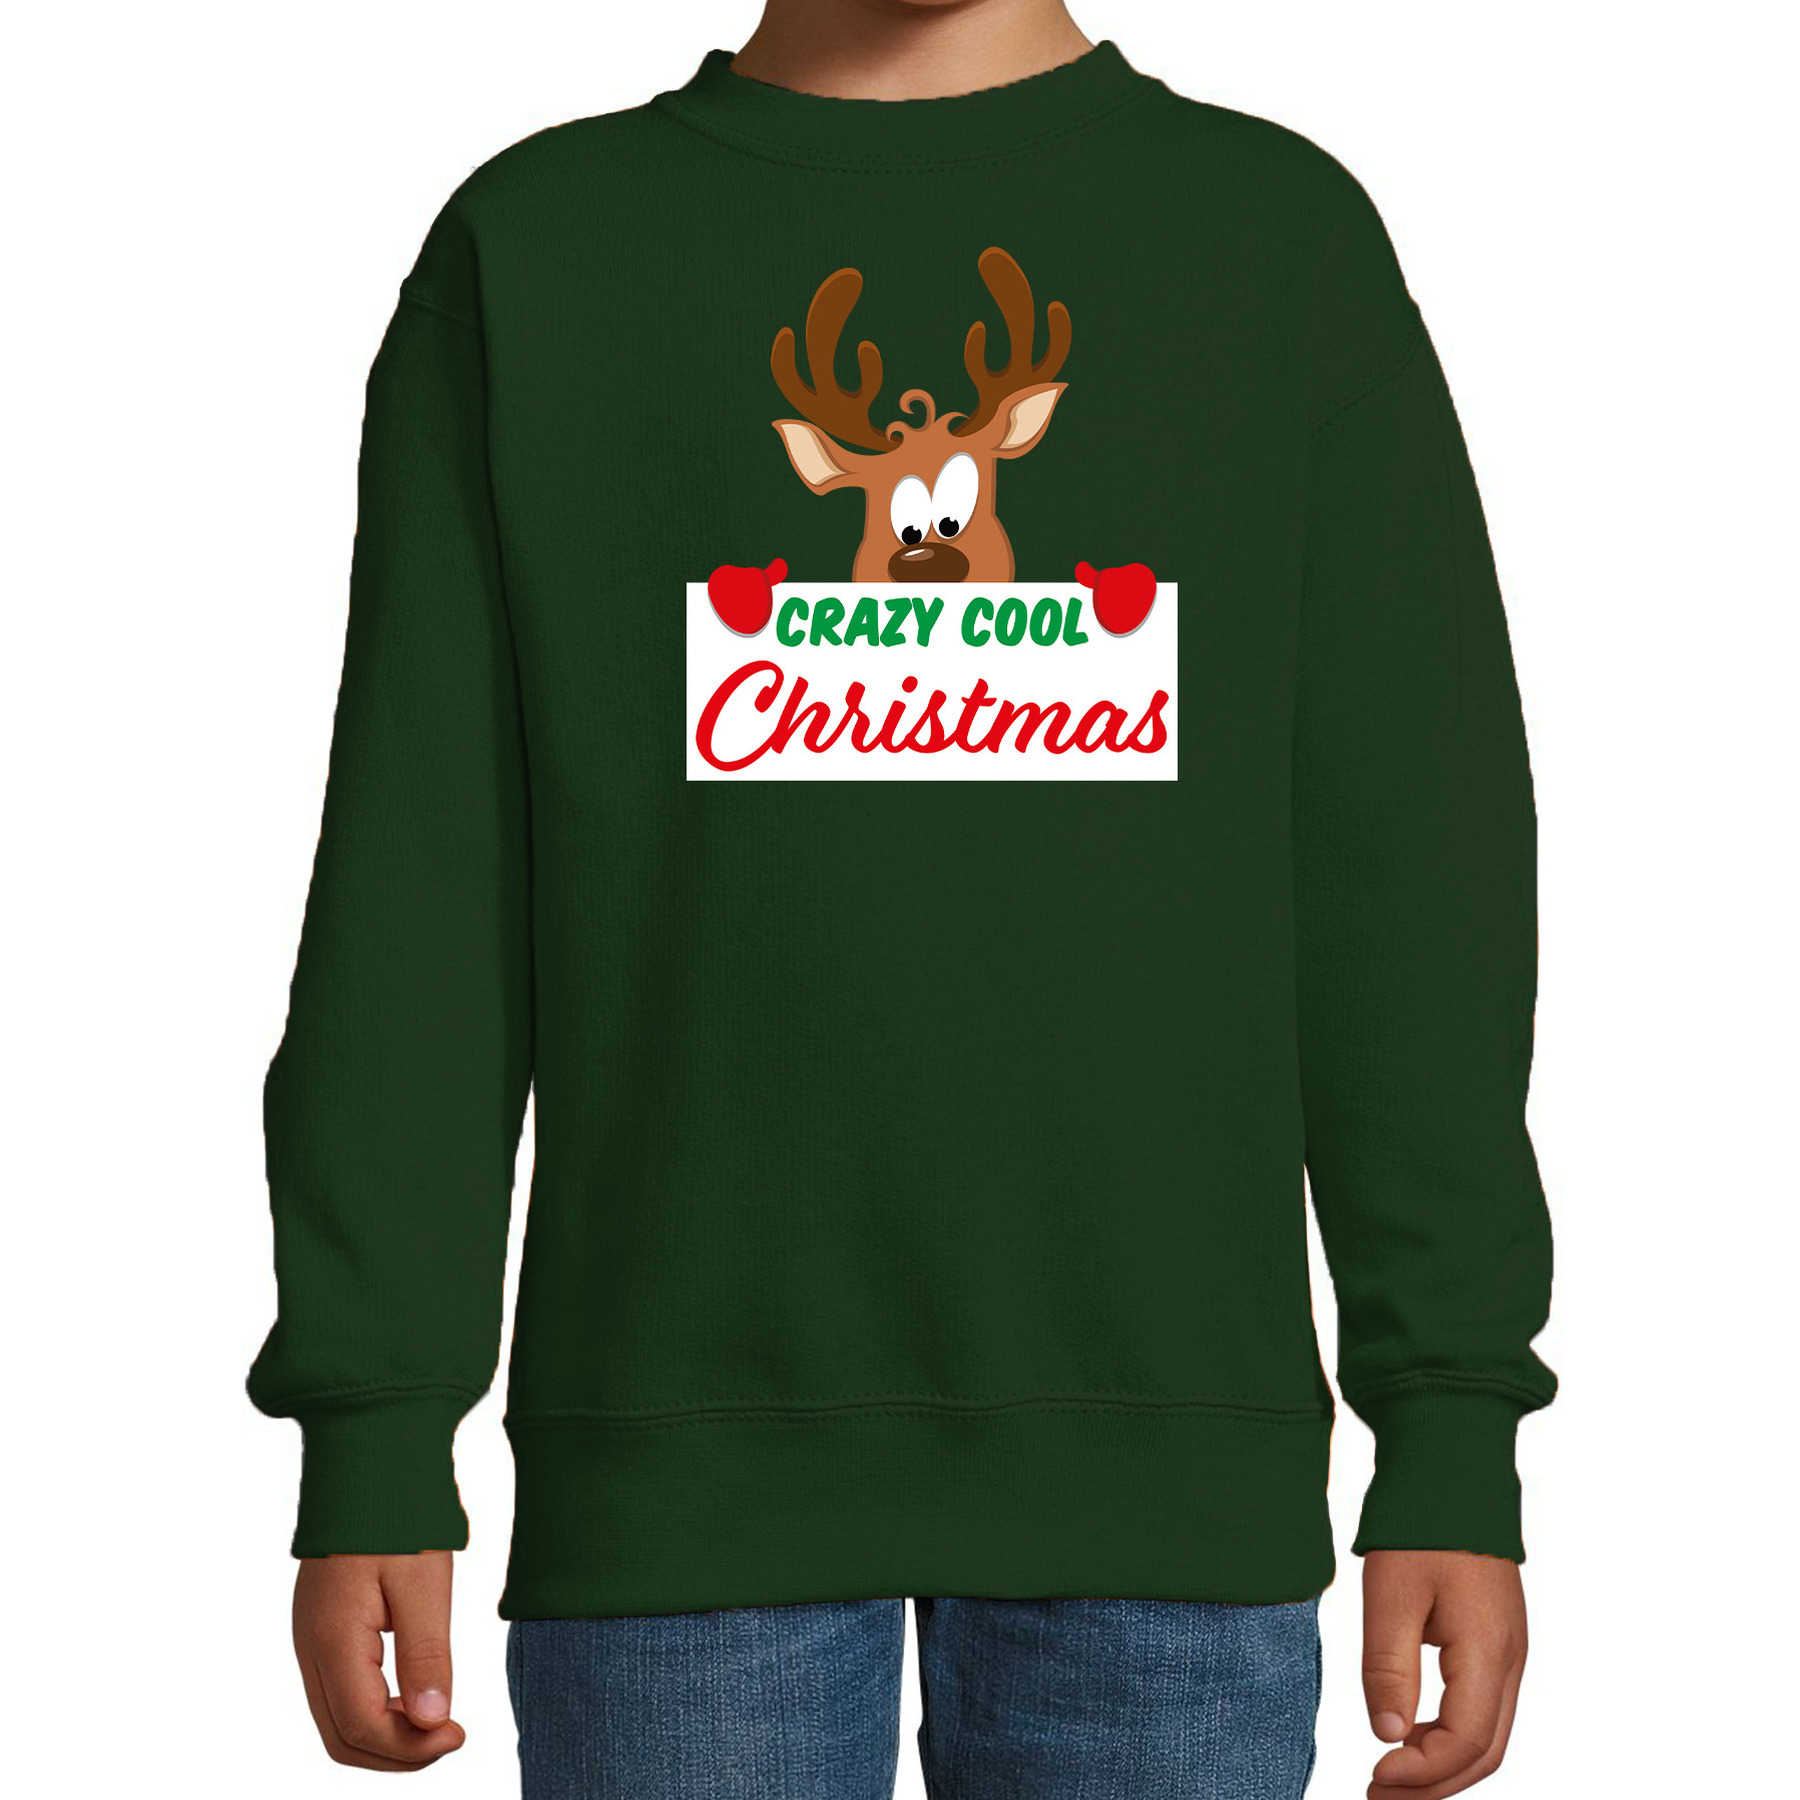 Crazy cool Christmas Kerstsweater - Kersttrui groen voor kinderen